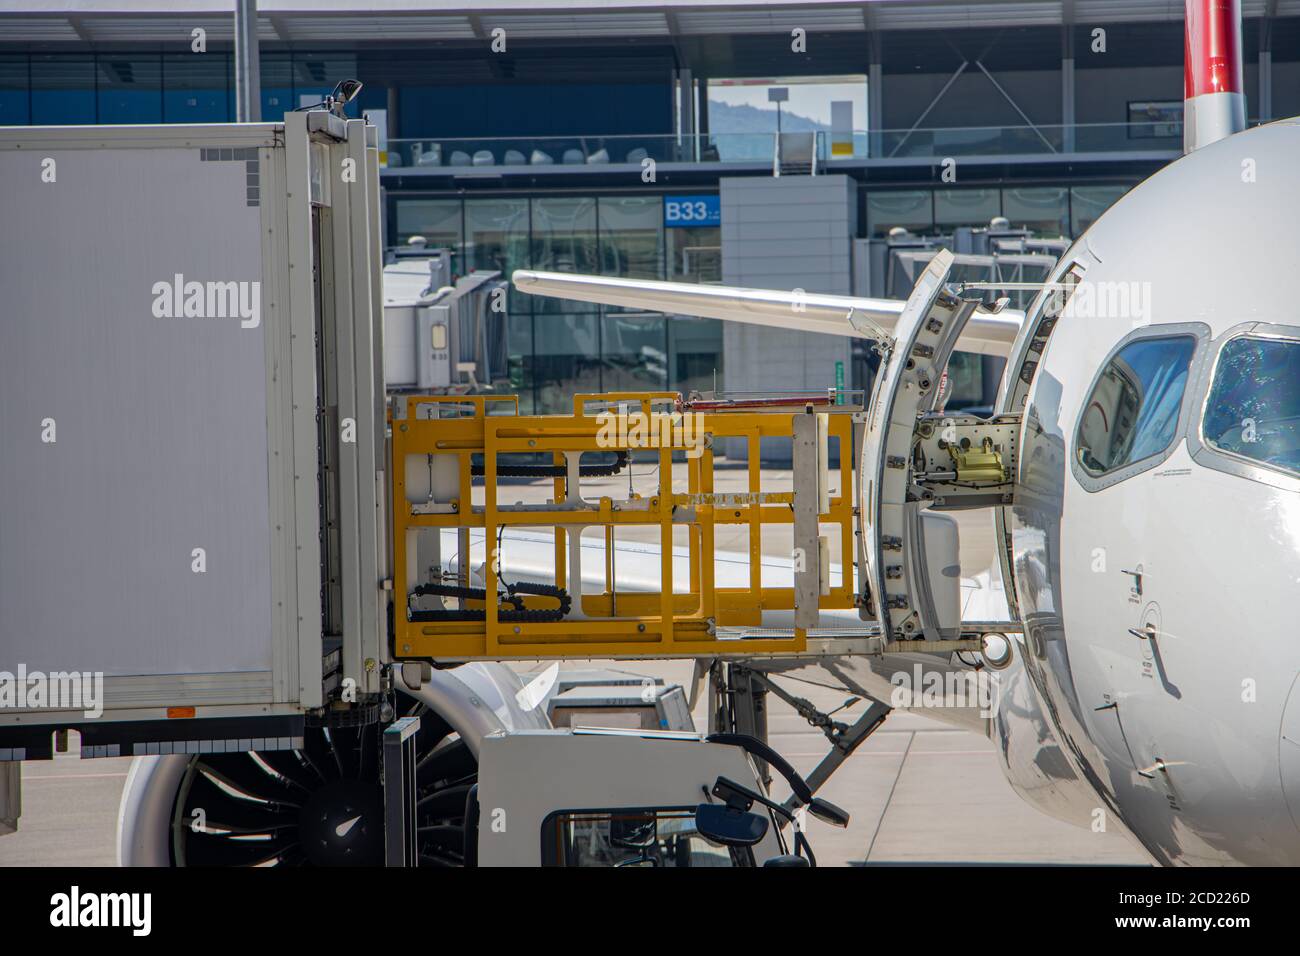 Versorgung des Flugzeugs mit Lebensmitteln aus einem Container, der angehoben wird und mit der offenen Tür eines Flugzeugs verbunden ist. Stockfoto